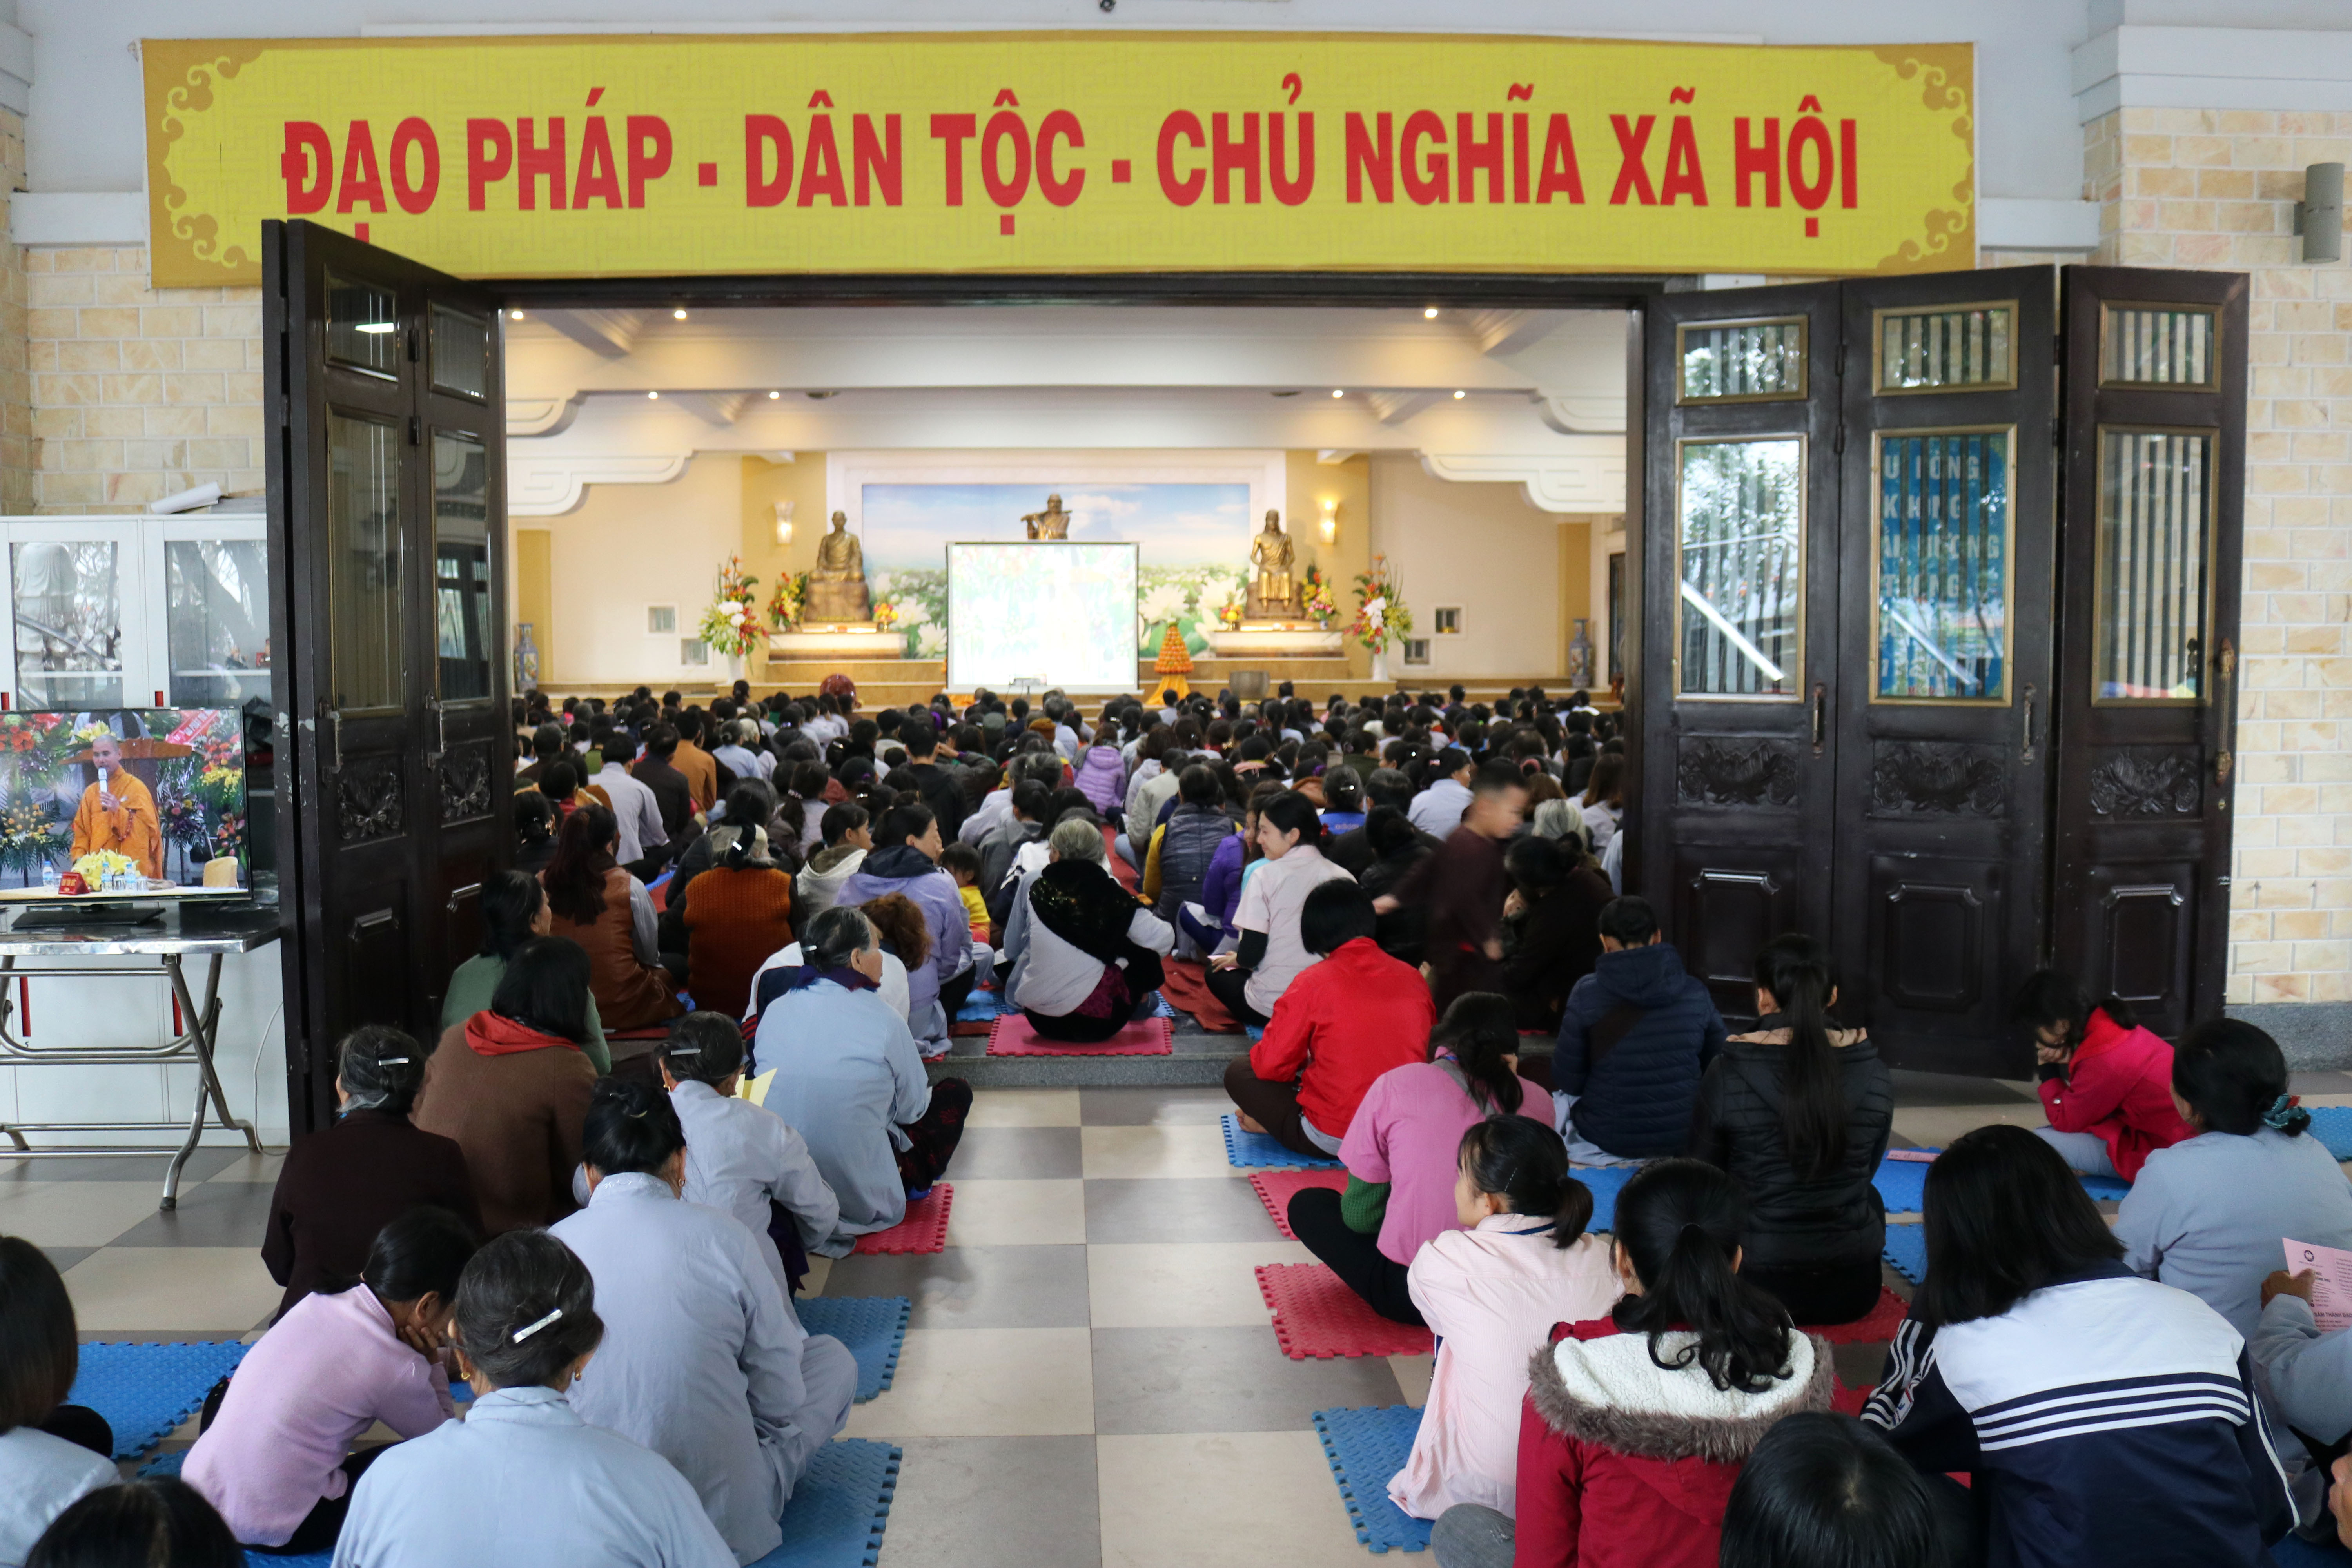 Mỗi dịp đại lễ diễn ra tại chùa Viên Quang, nhà chùa đã lắp đặt nhiều màn hình lớn để hàng nghìn phật tử về chùa đều có thể theo dõi được buổi lễ.  Ảnh: Huy Thư